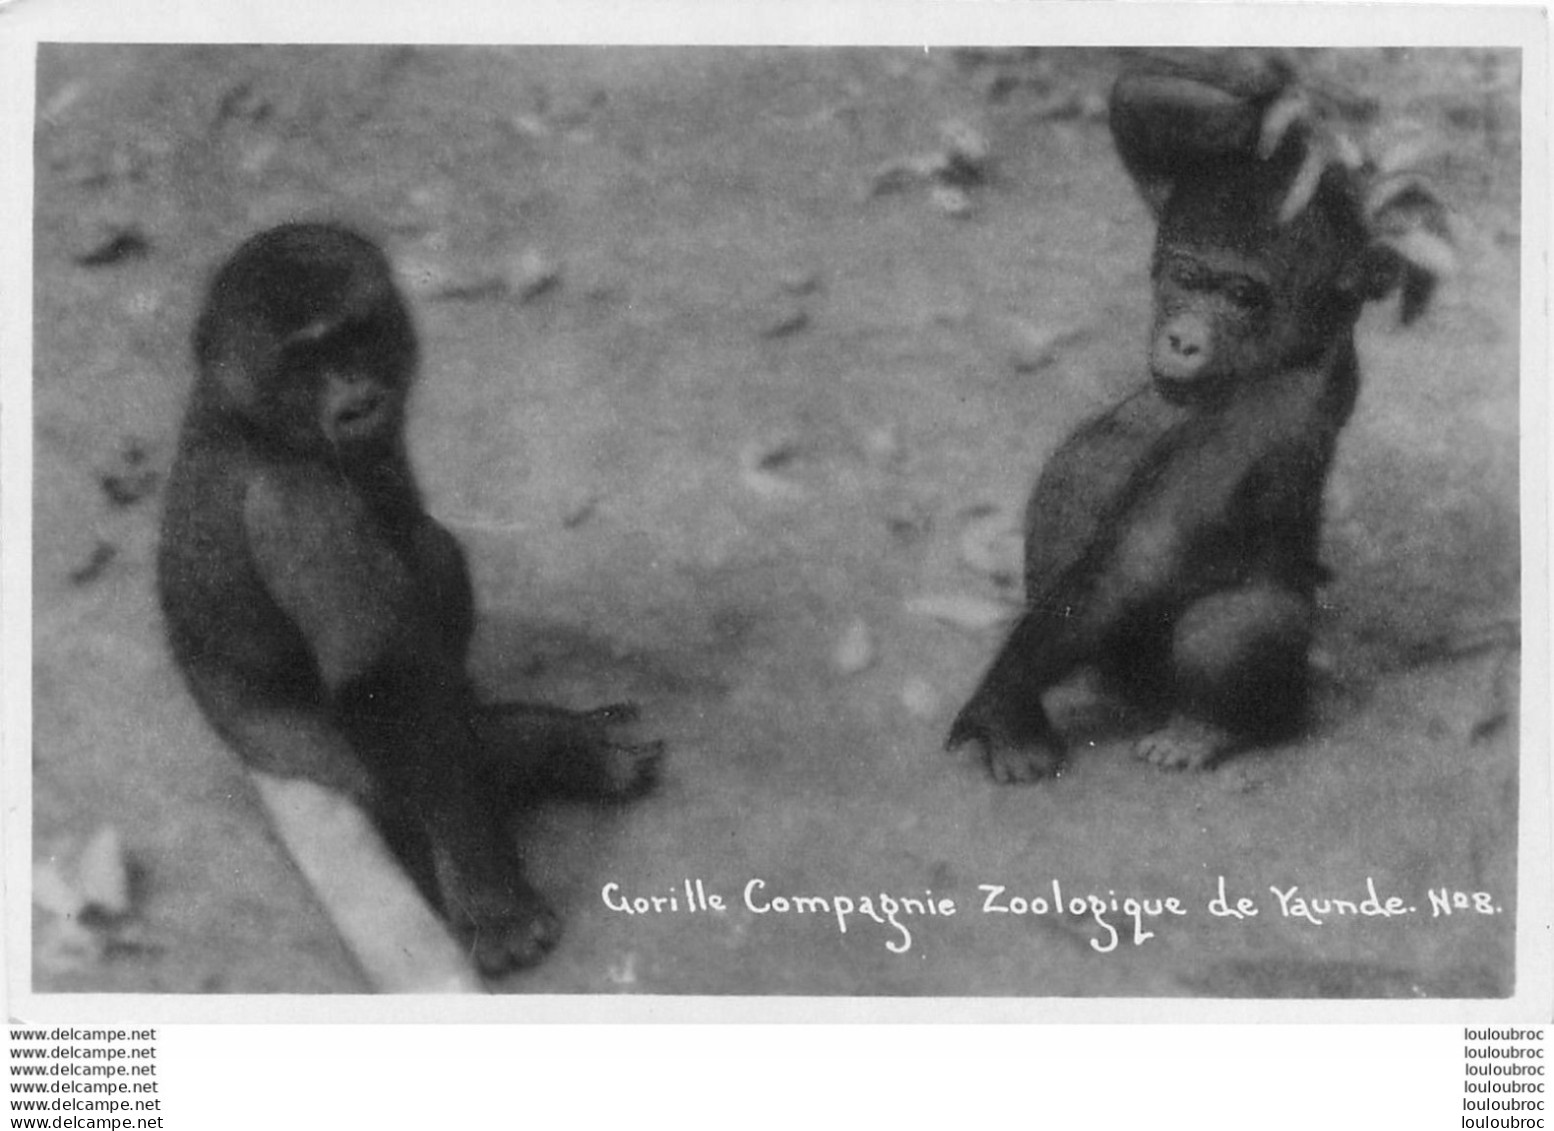 COMPAGNIE ZOOLOGIQUE DE YAUNDE CAMEROUN GORILLE R6 - Cameroon